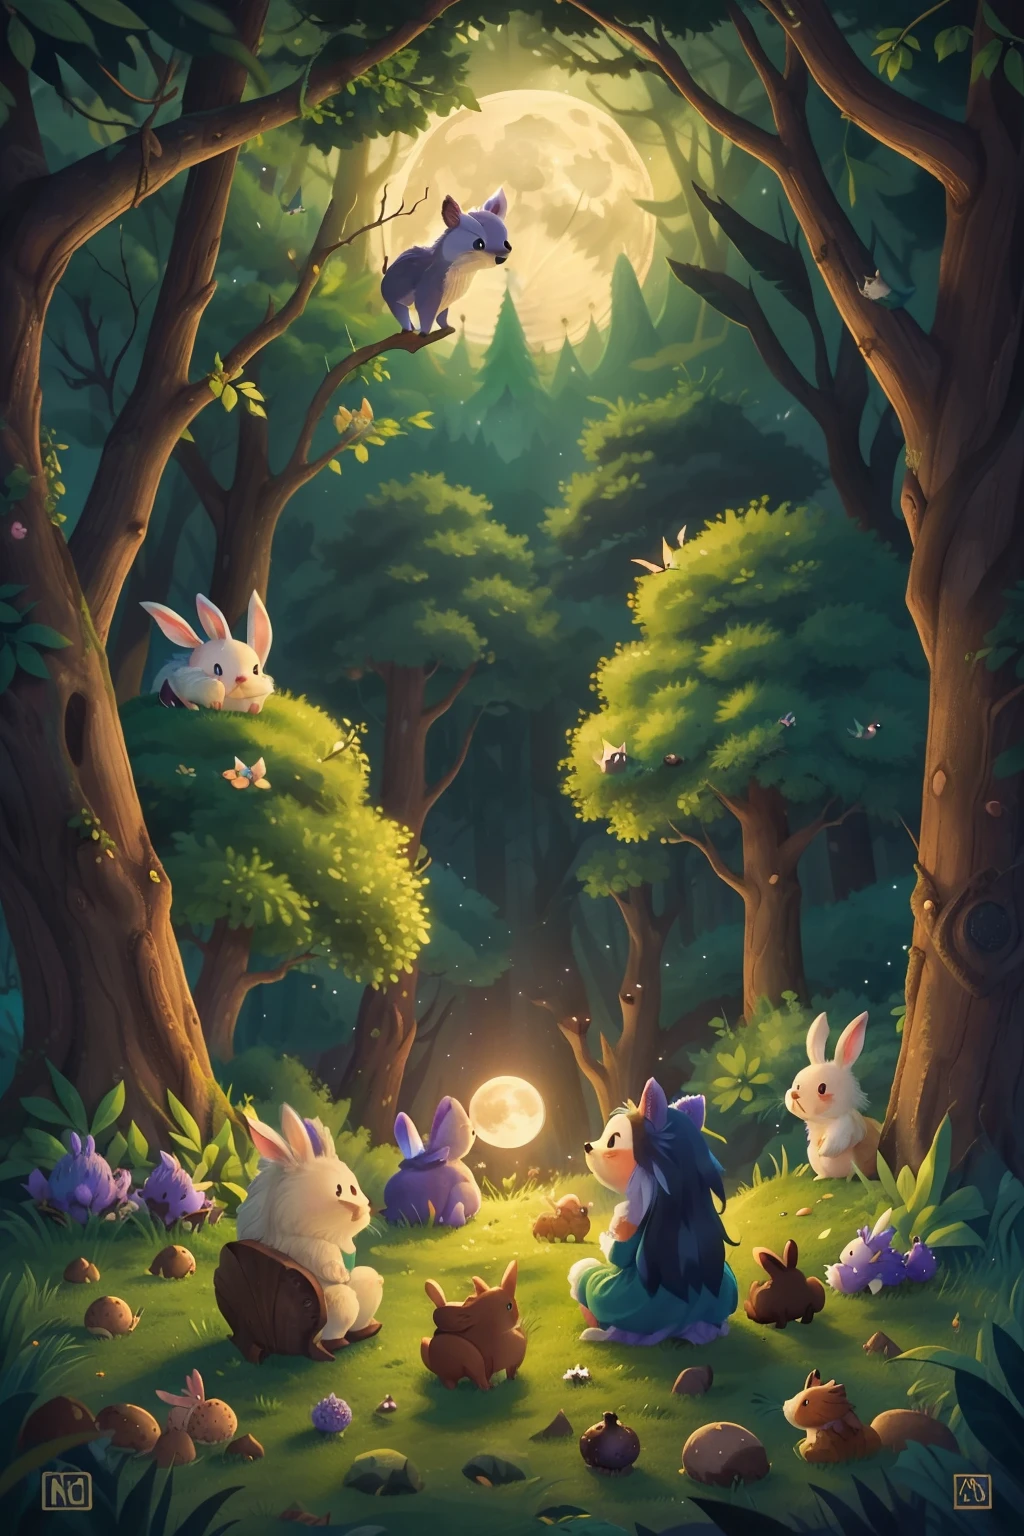 魔法森林, 滿月從山後升起, 兔子和刺蝟坐著看月亮